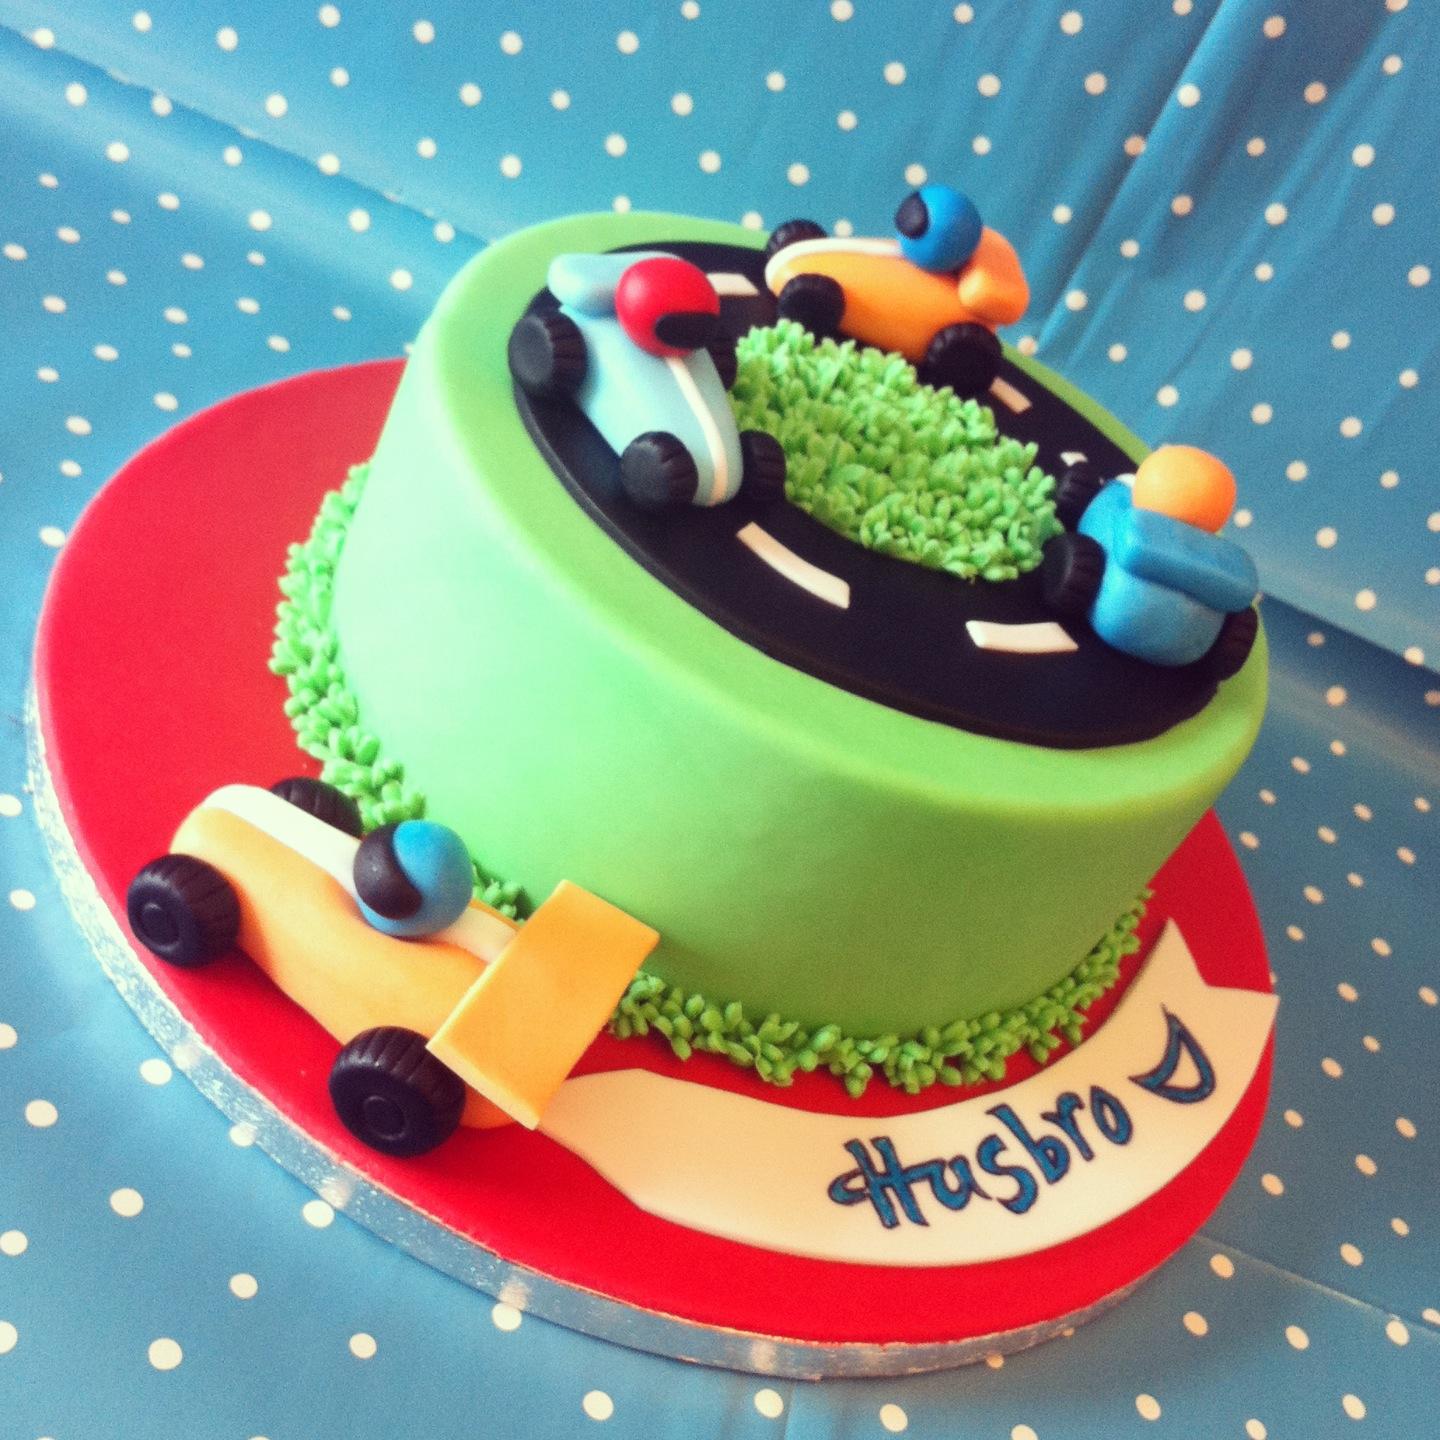 I bambini si cimentano nel cake design grazie a Play-doh